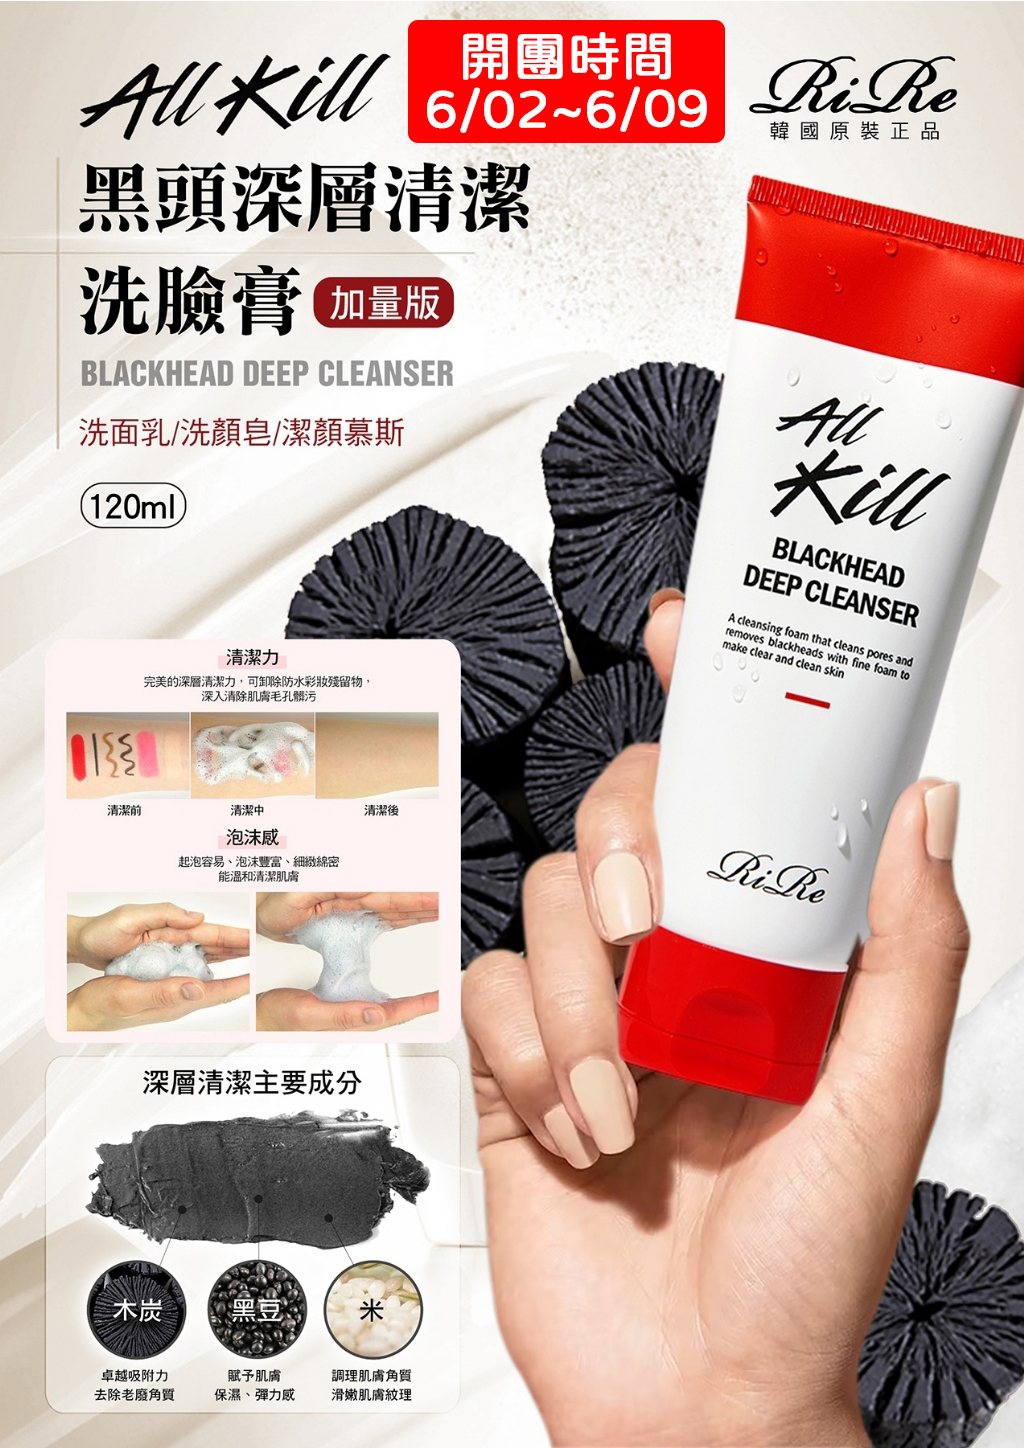 韓國 RiRe All Kill黑頭深層清潔洗臉膏 120ml 草本 收縮毛孔 光滑 溫和 水潤